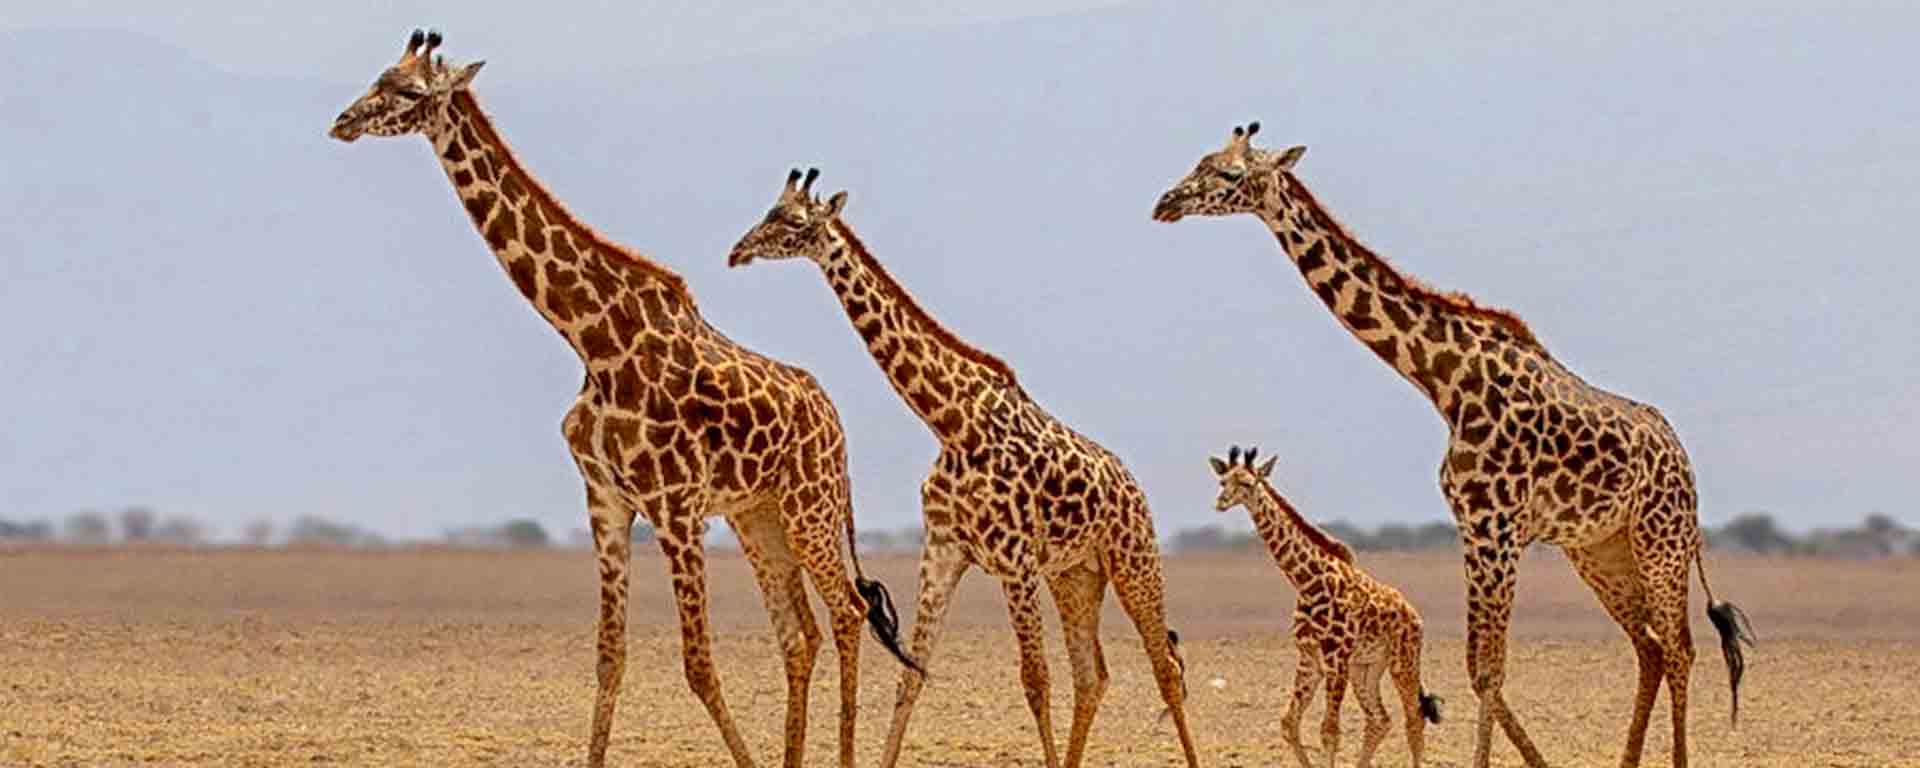 budget & affordable safaris in Kenya